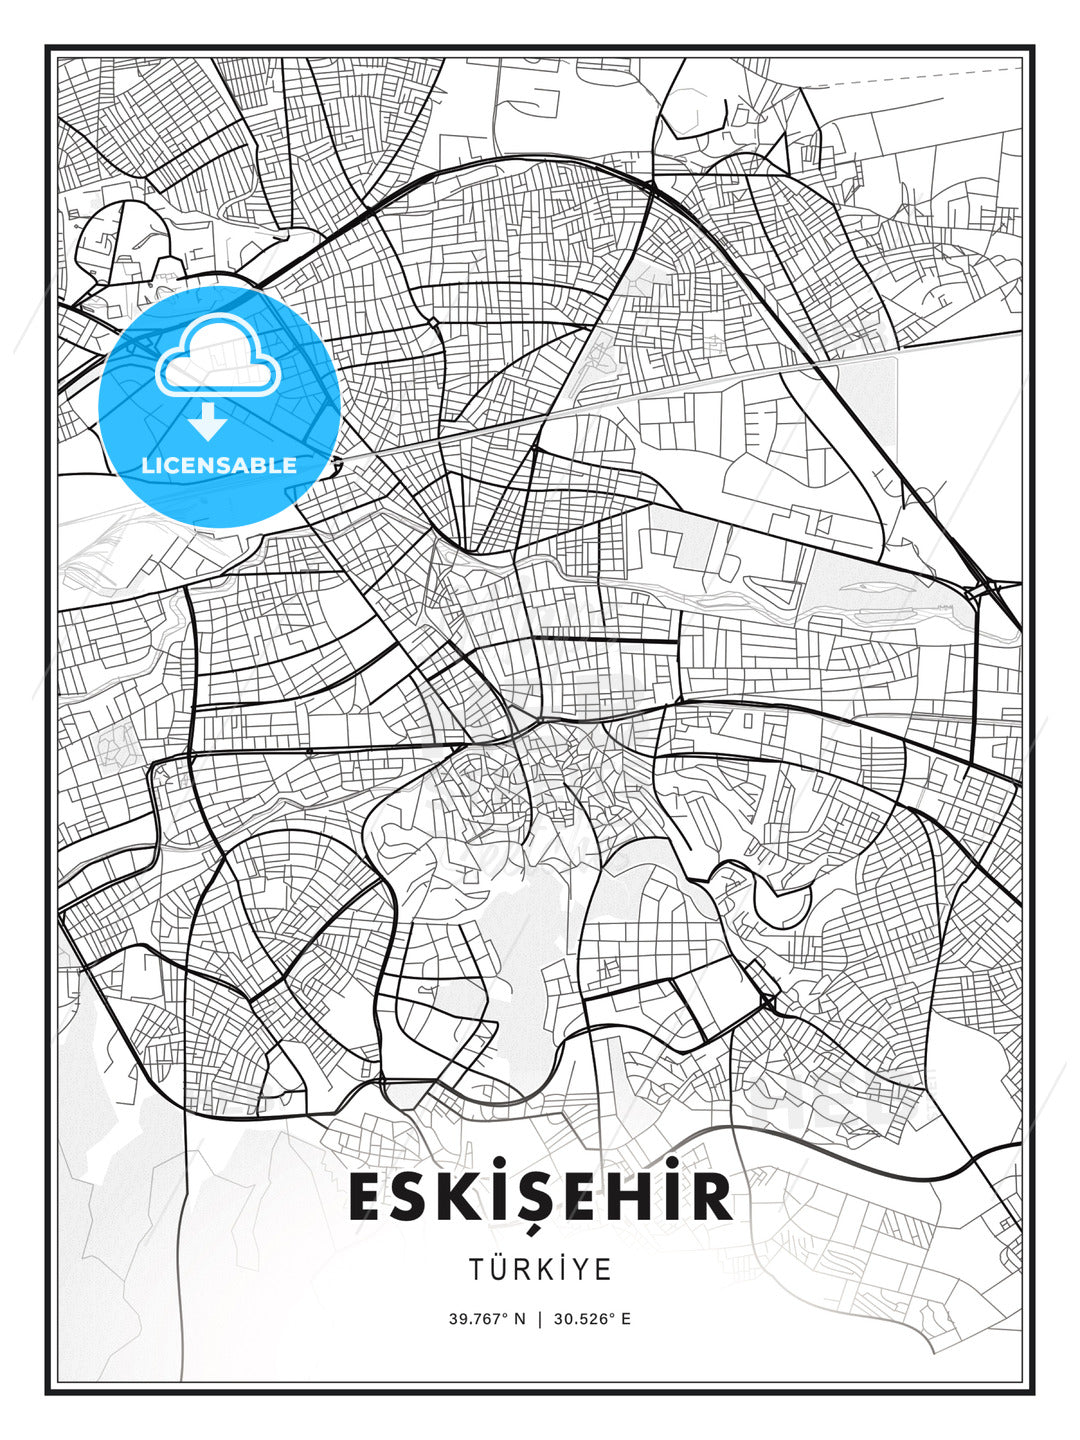 ESKİŞEHİR / Eskişehir, Turkey, Modern Print Template in Various Formats - HEBSTREITS Sketches